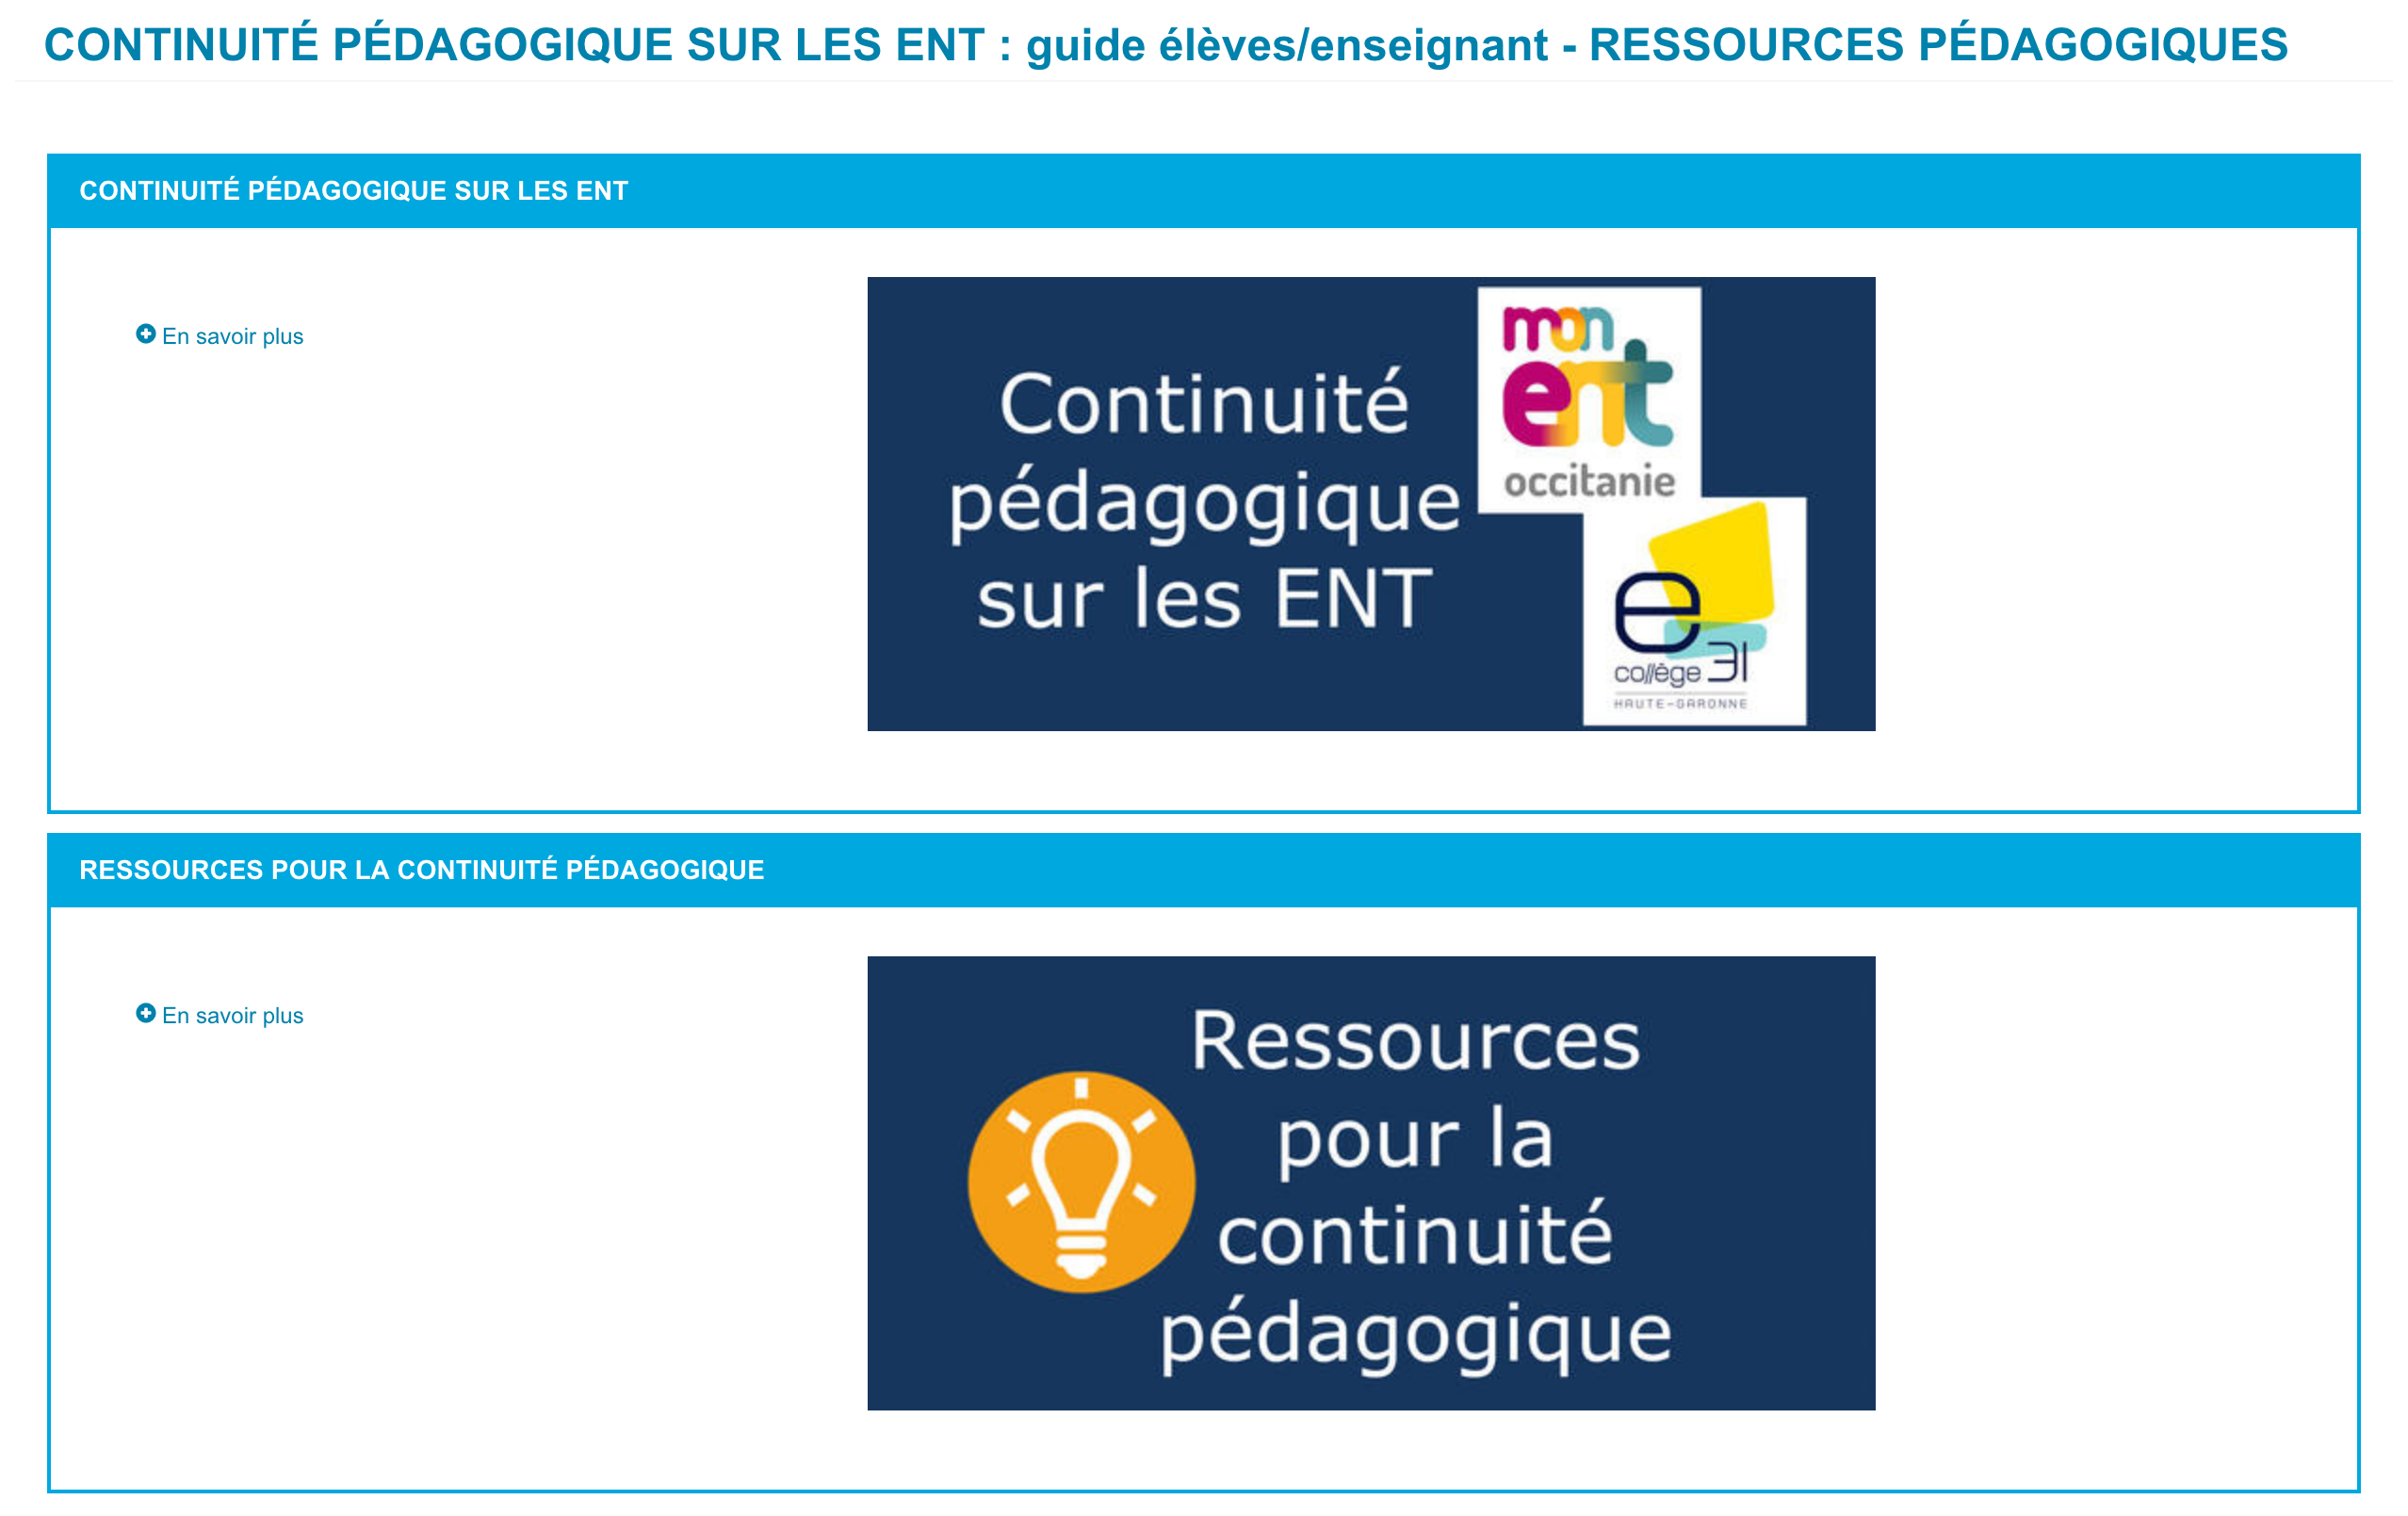 screenshot_2020-03-16_continuite_pedagogique_sur_les_ent_guide_eleves_enseignant_-_ressources_pedagogiques_dane.png